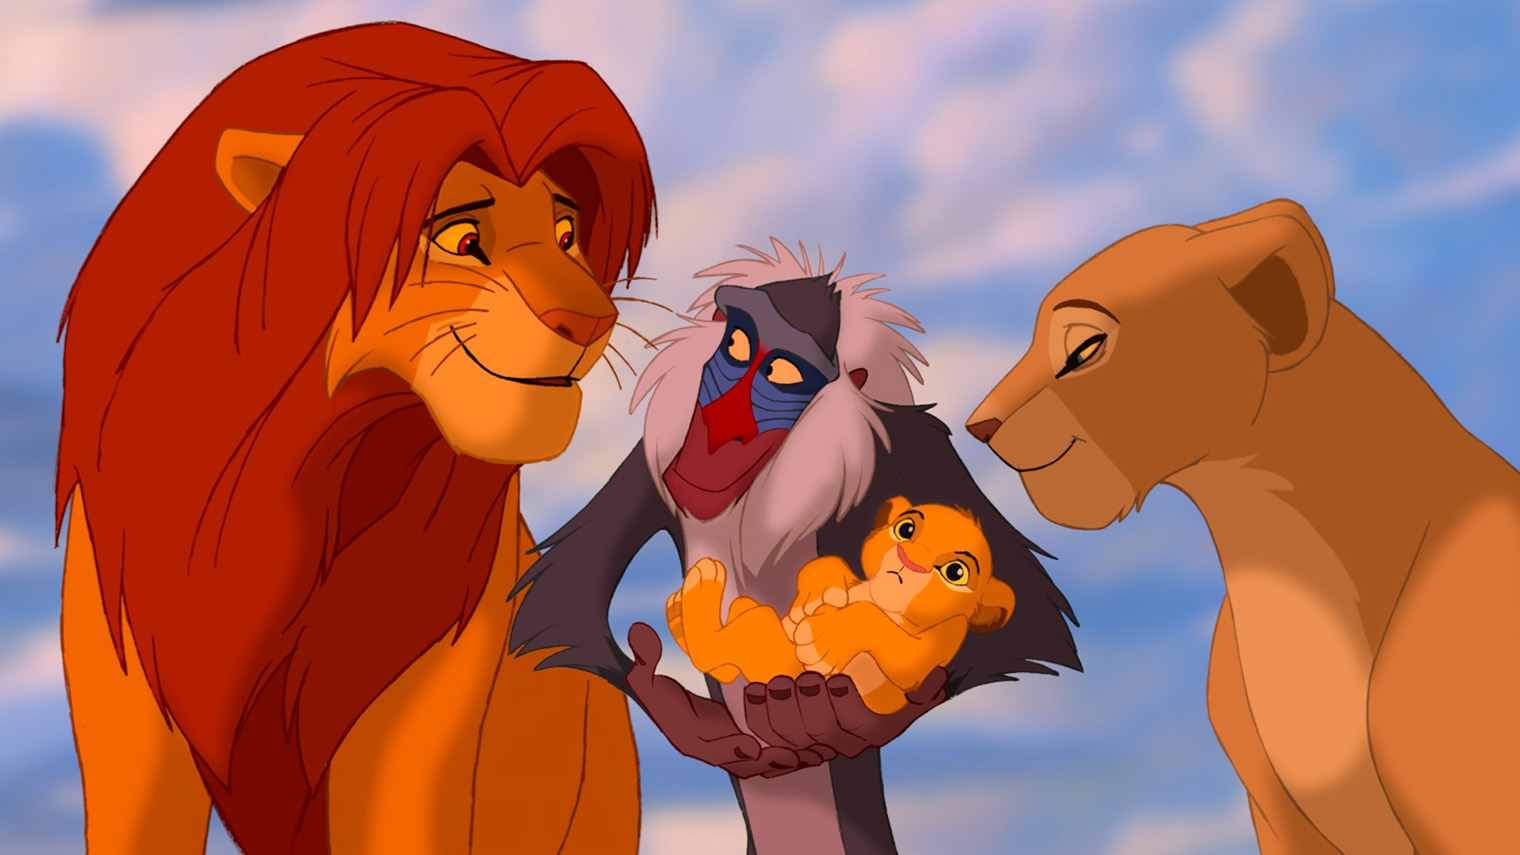 Звукорежиссеры мультфильма не использовали записи с рычанием львов — все звуки записывал актер Фрэнк Уэлкер. Источник: Disney